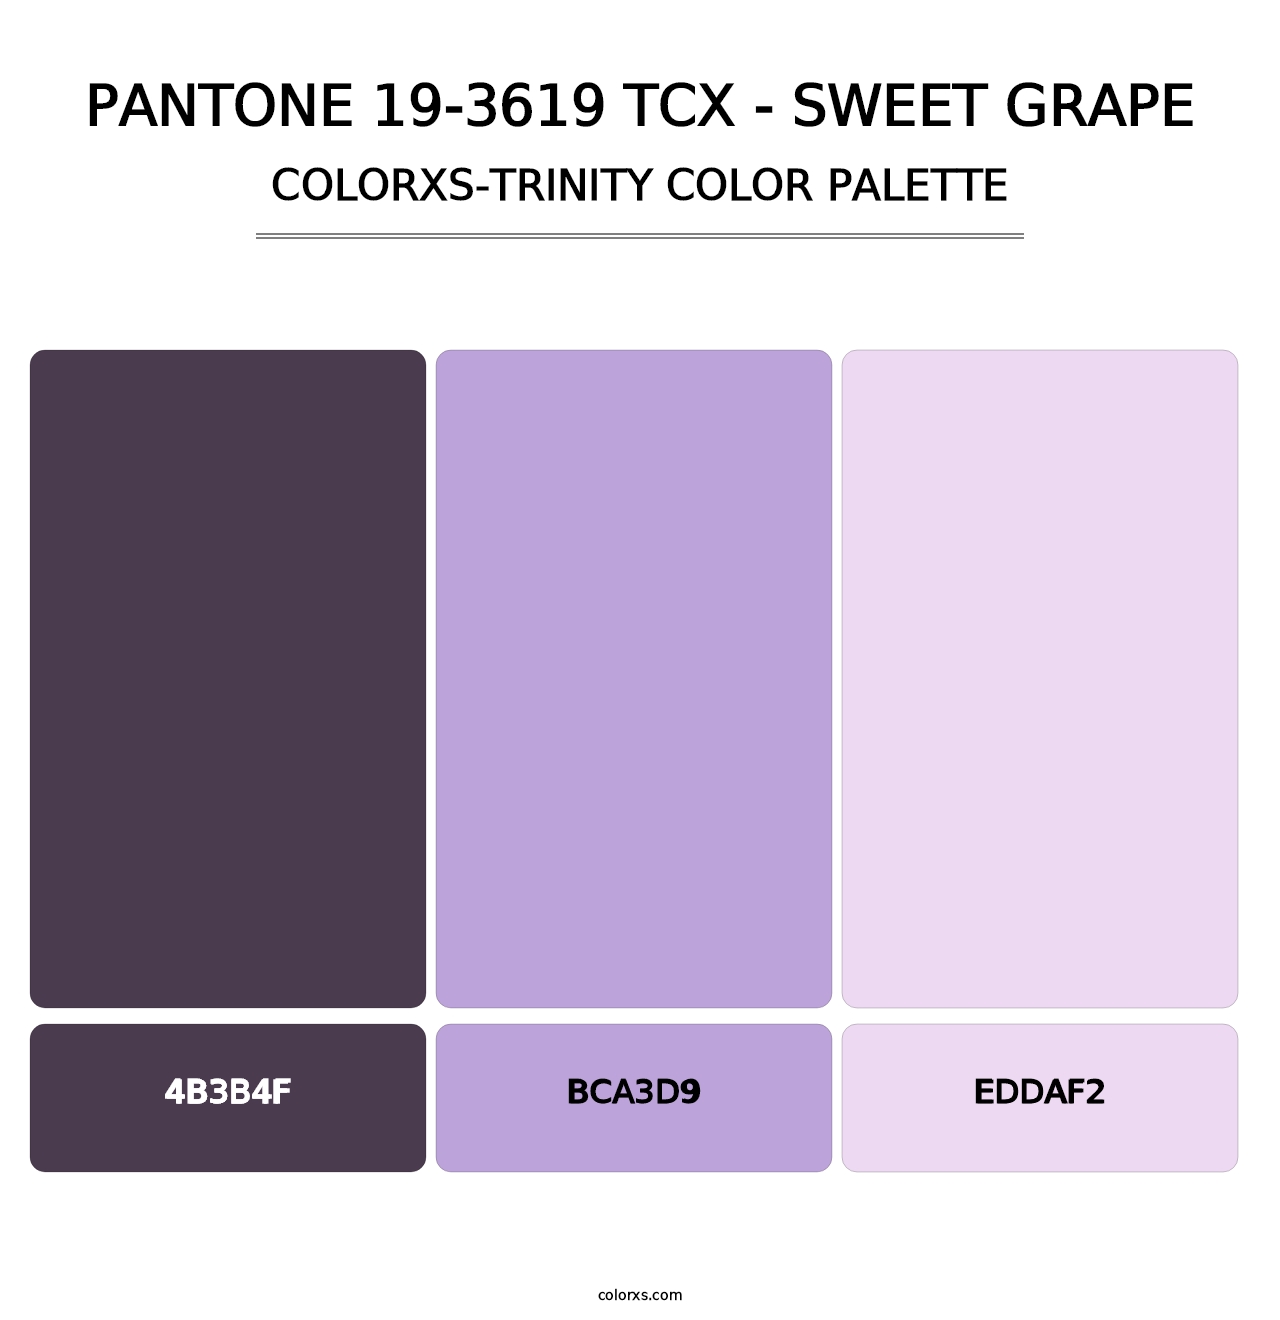 PANTONE 19-3619 TCX - Sweet Grape - Colorxs Trinity Palette